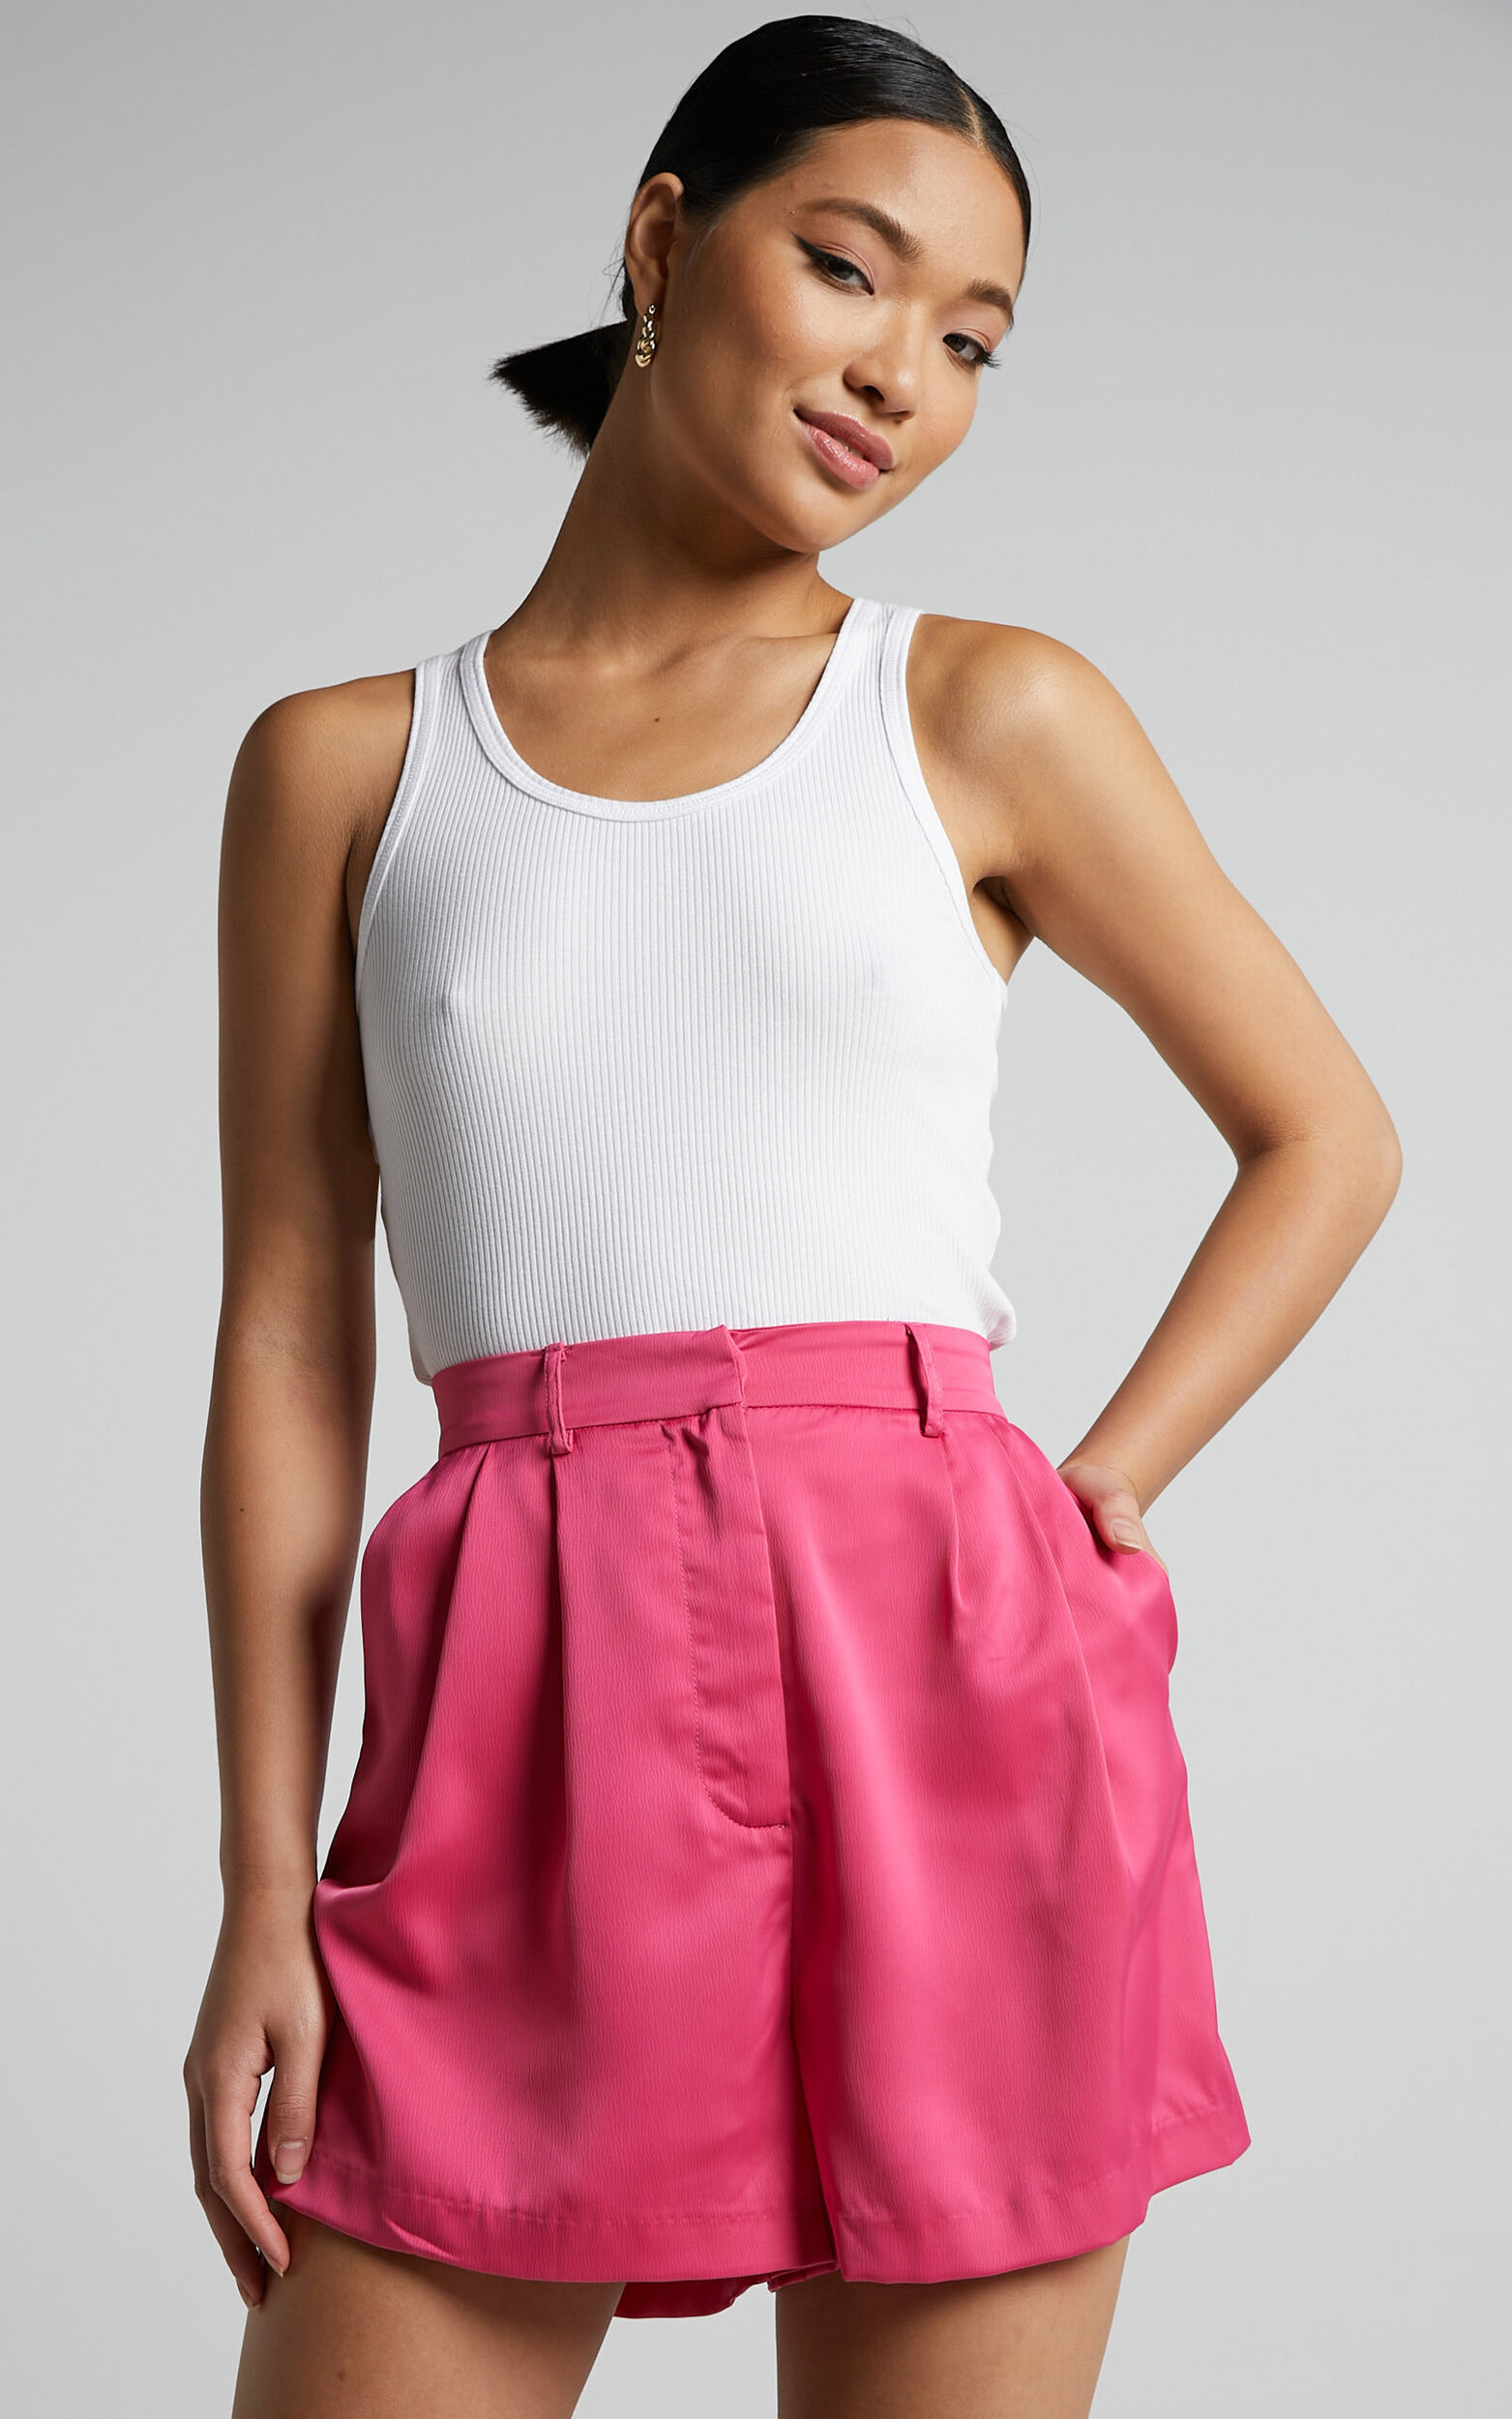 Jannie Shorts - High Waist Tailored Shorts in Pink - 04, PNK1